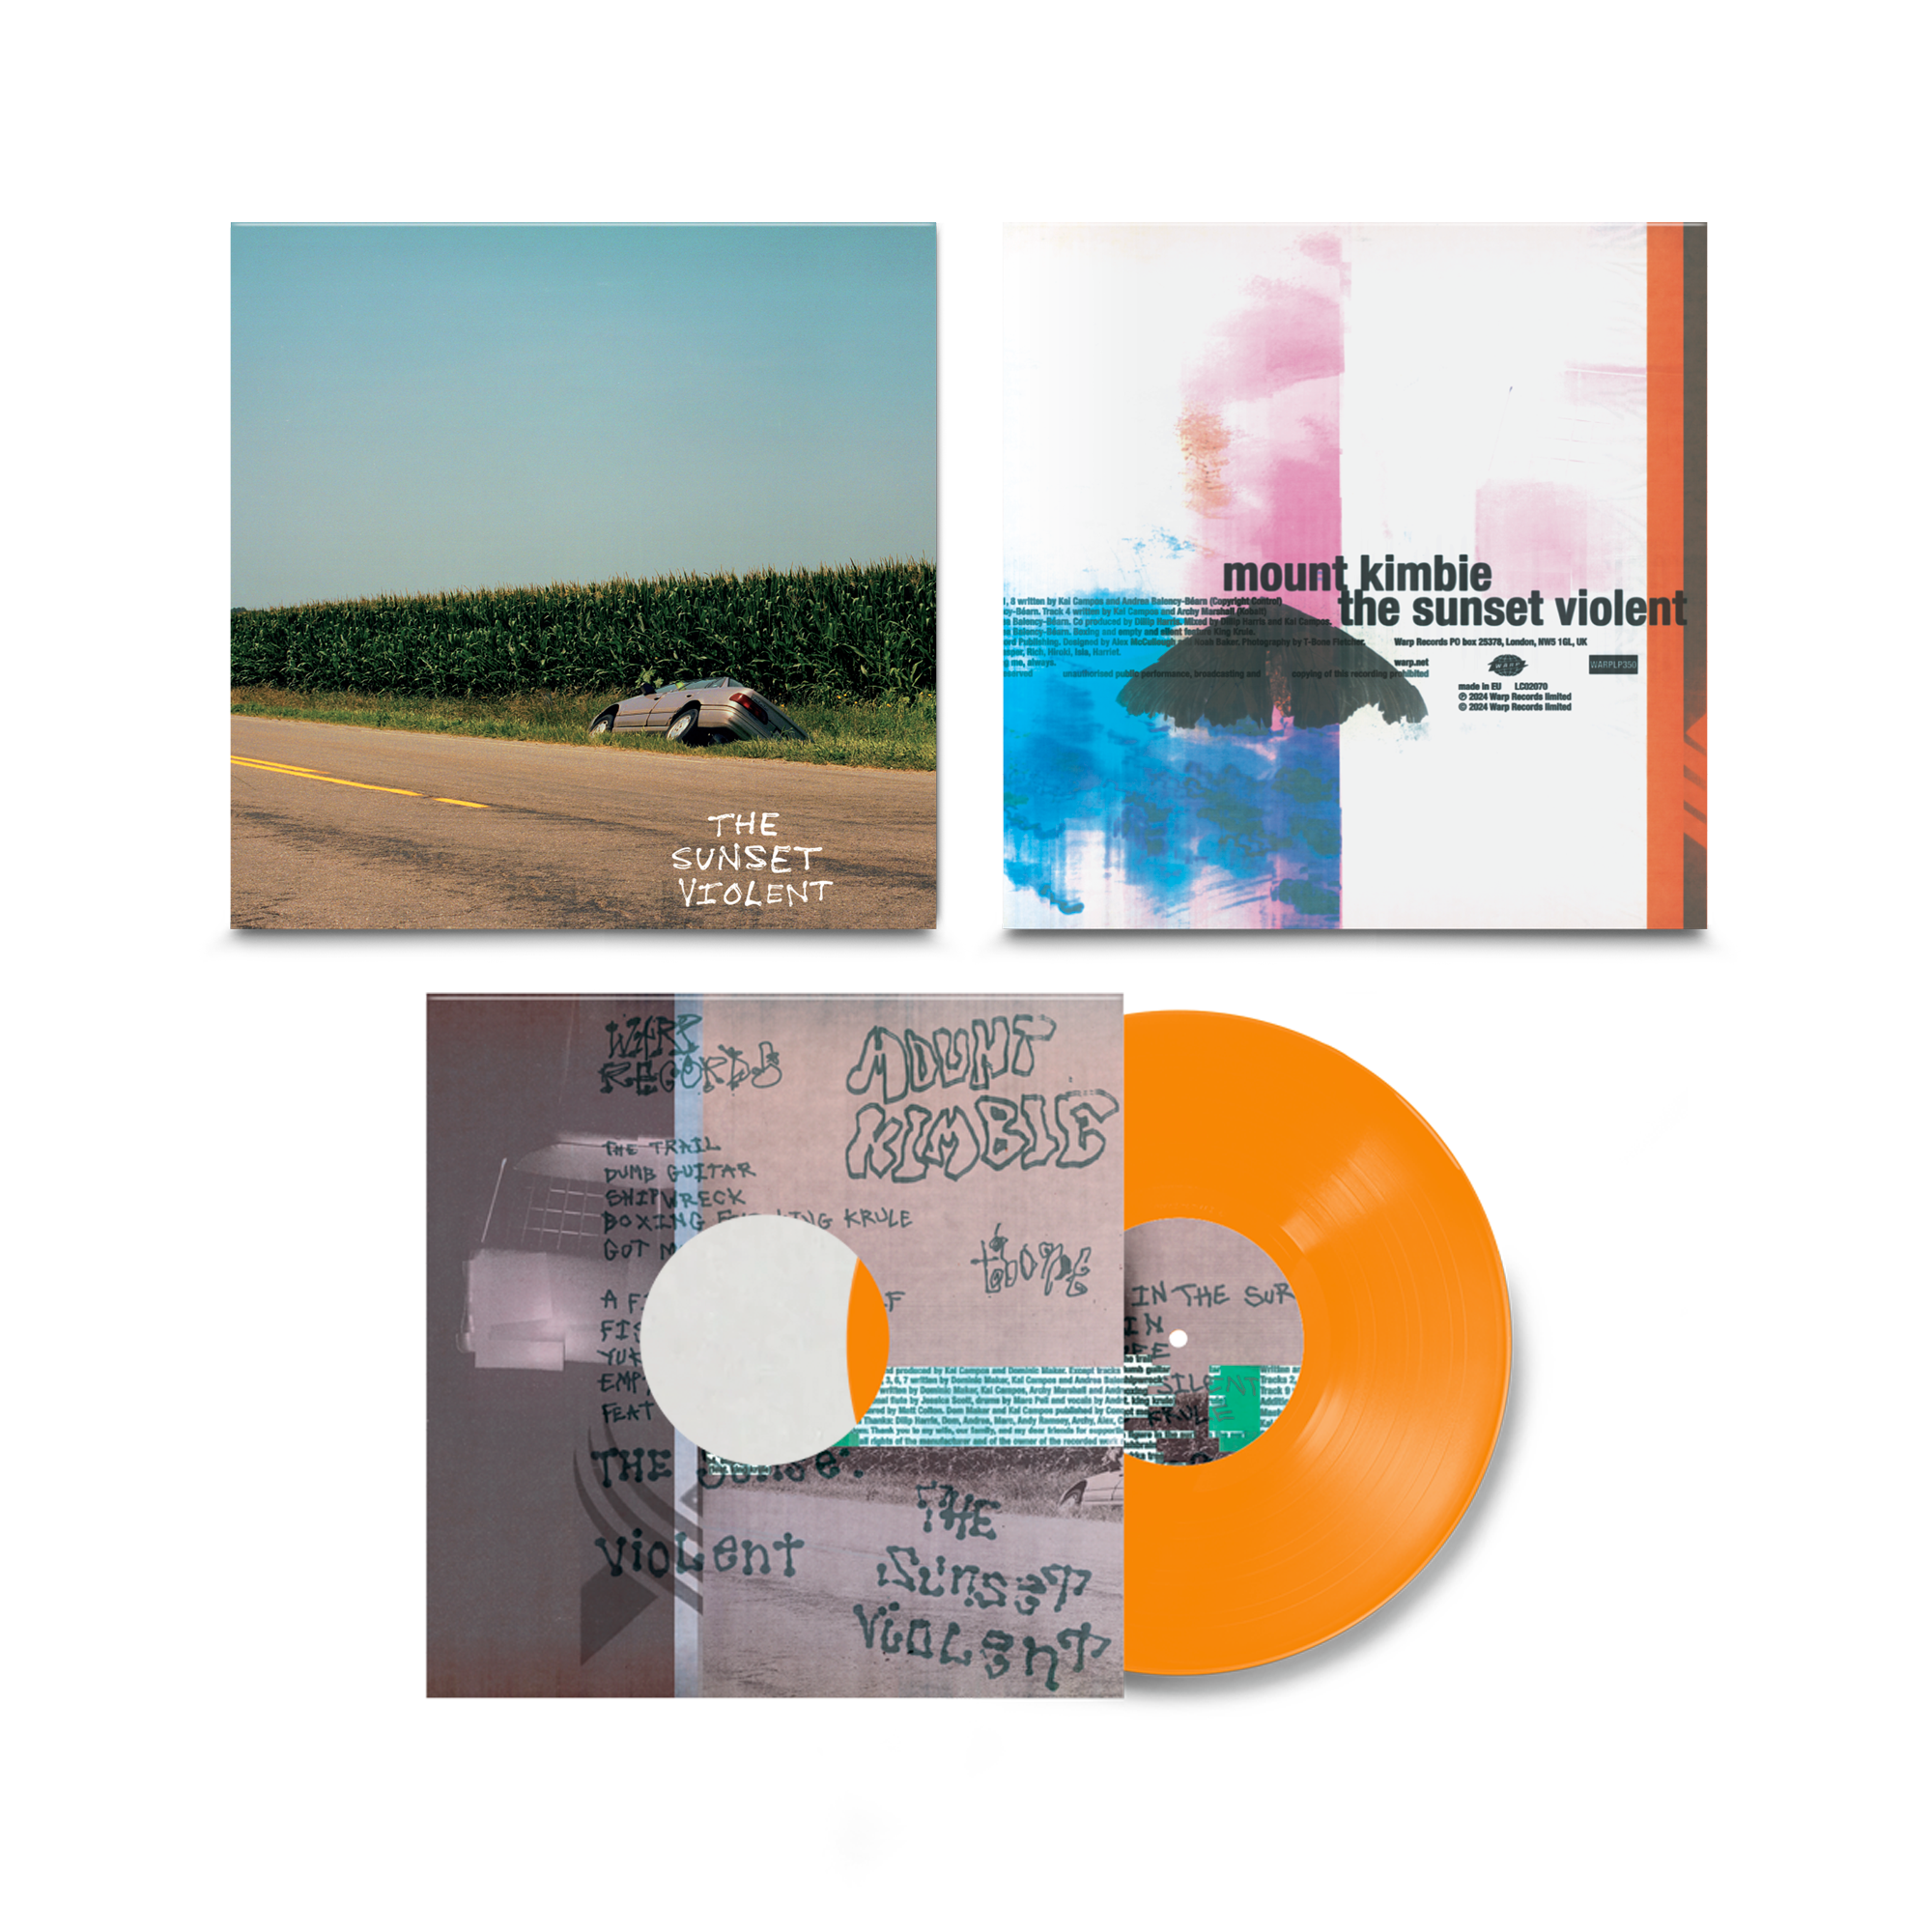 The Sunset Violent: Limited Orange Vinyl LP + Signed Print